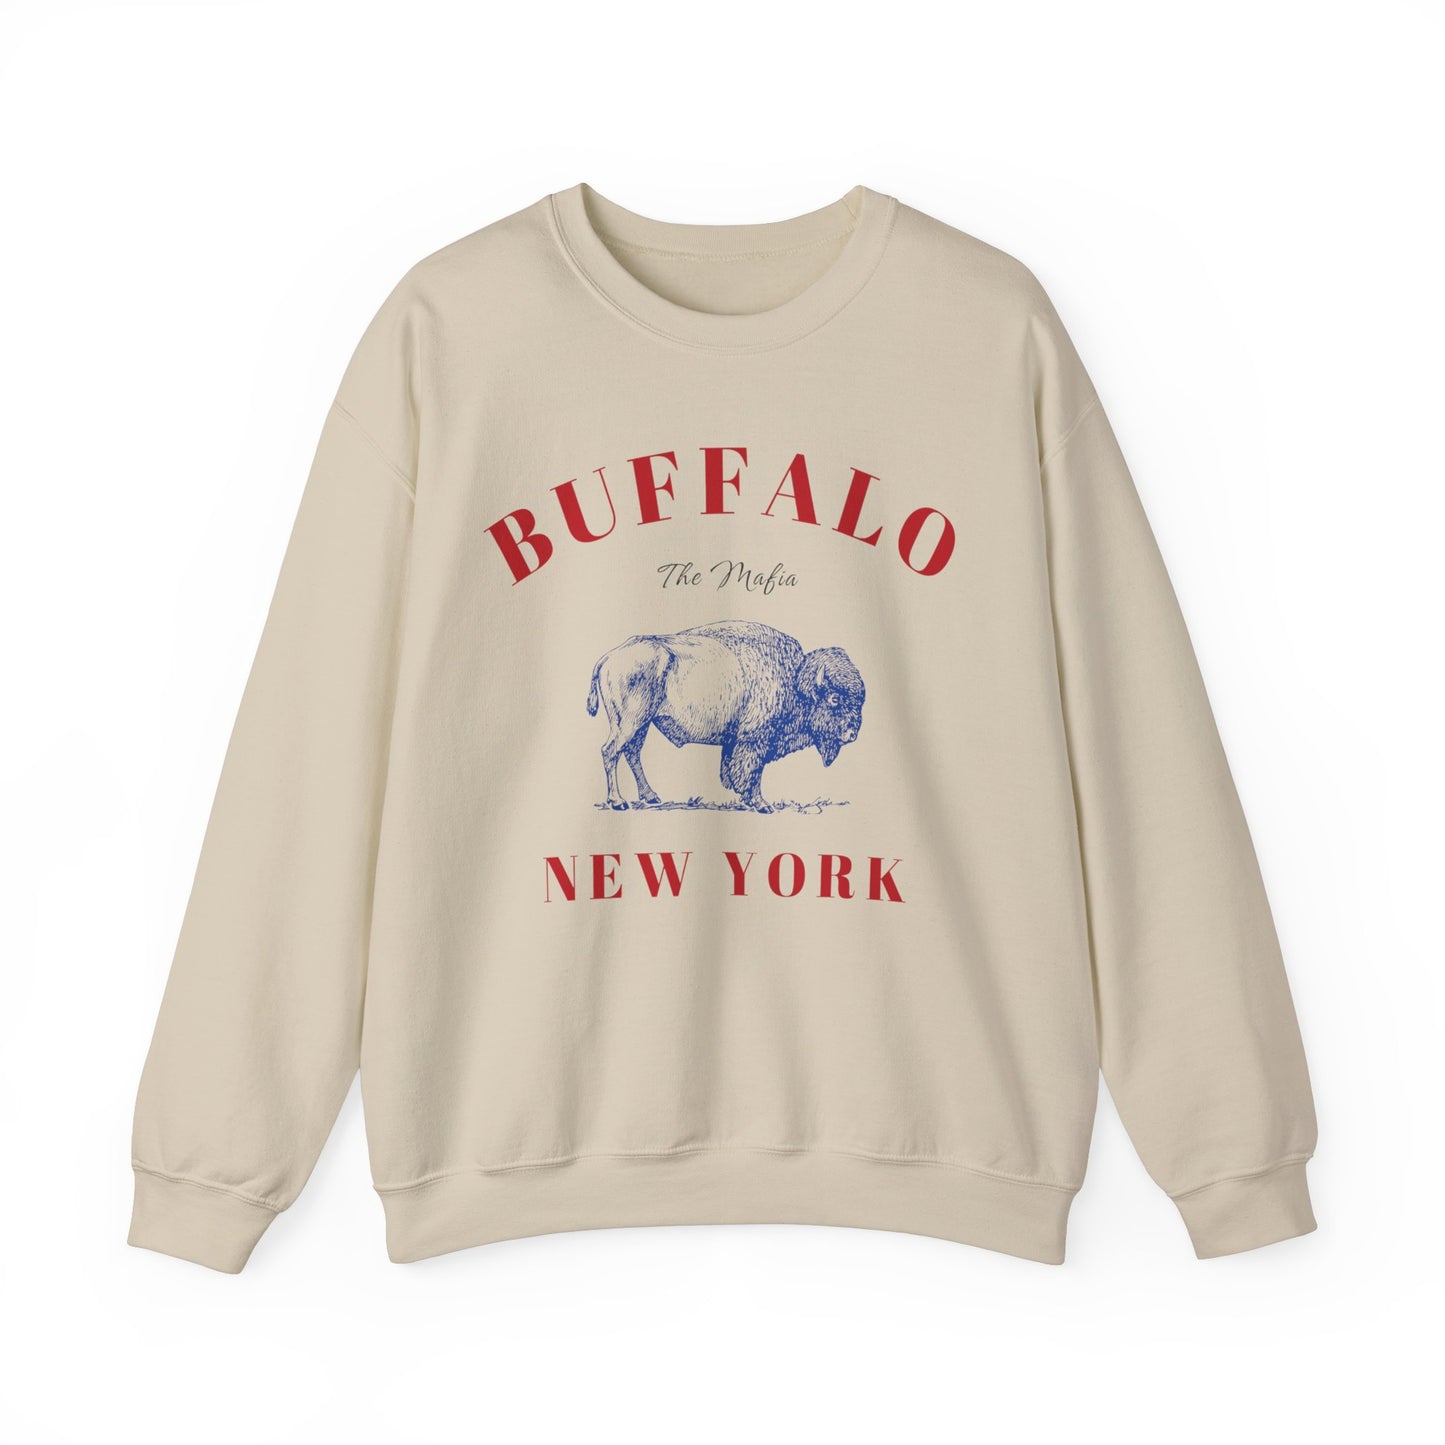 Buffalo, The Mafia Crewneck - Color